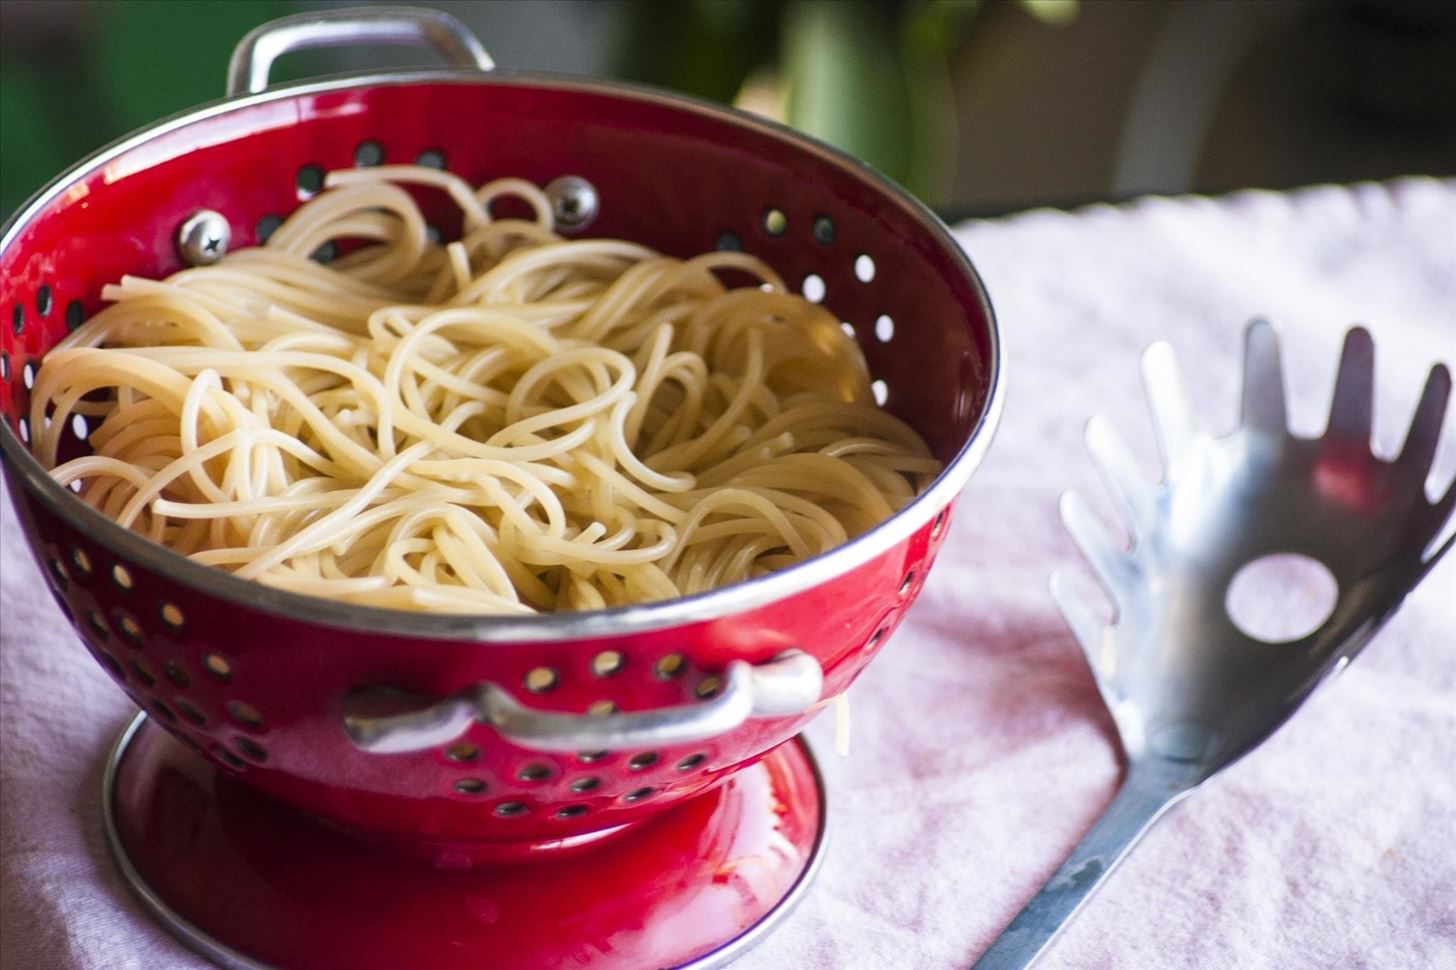 How to Turn Spaghetti into Ramen